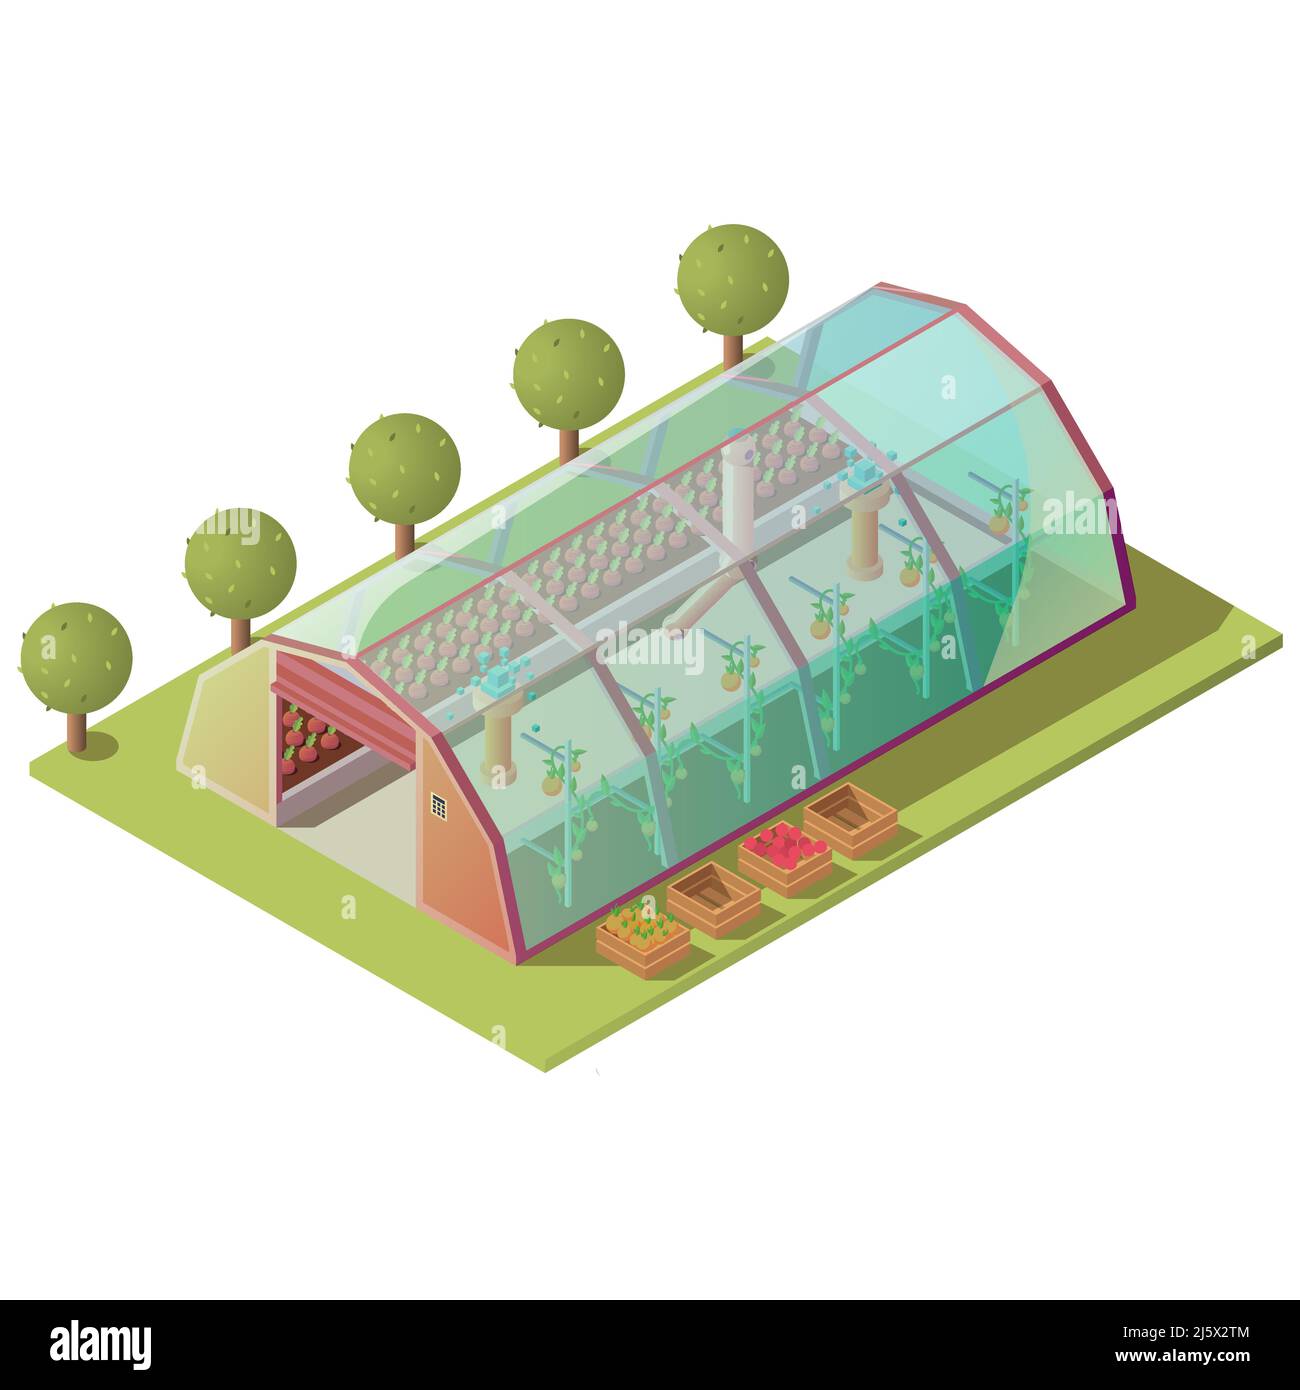 Serre isométrique, bâtiment agricole pour la culture de plantes et légumes avec fenêtres en verre et porte de levage automatique isolée sur fond blanc. Hoth Illustration de Vecteur